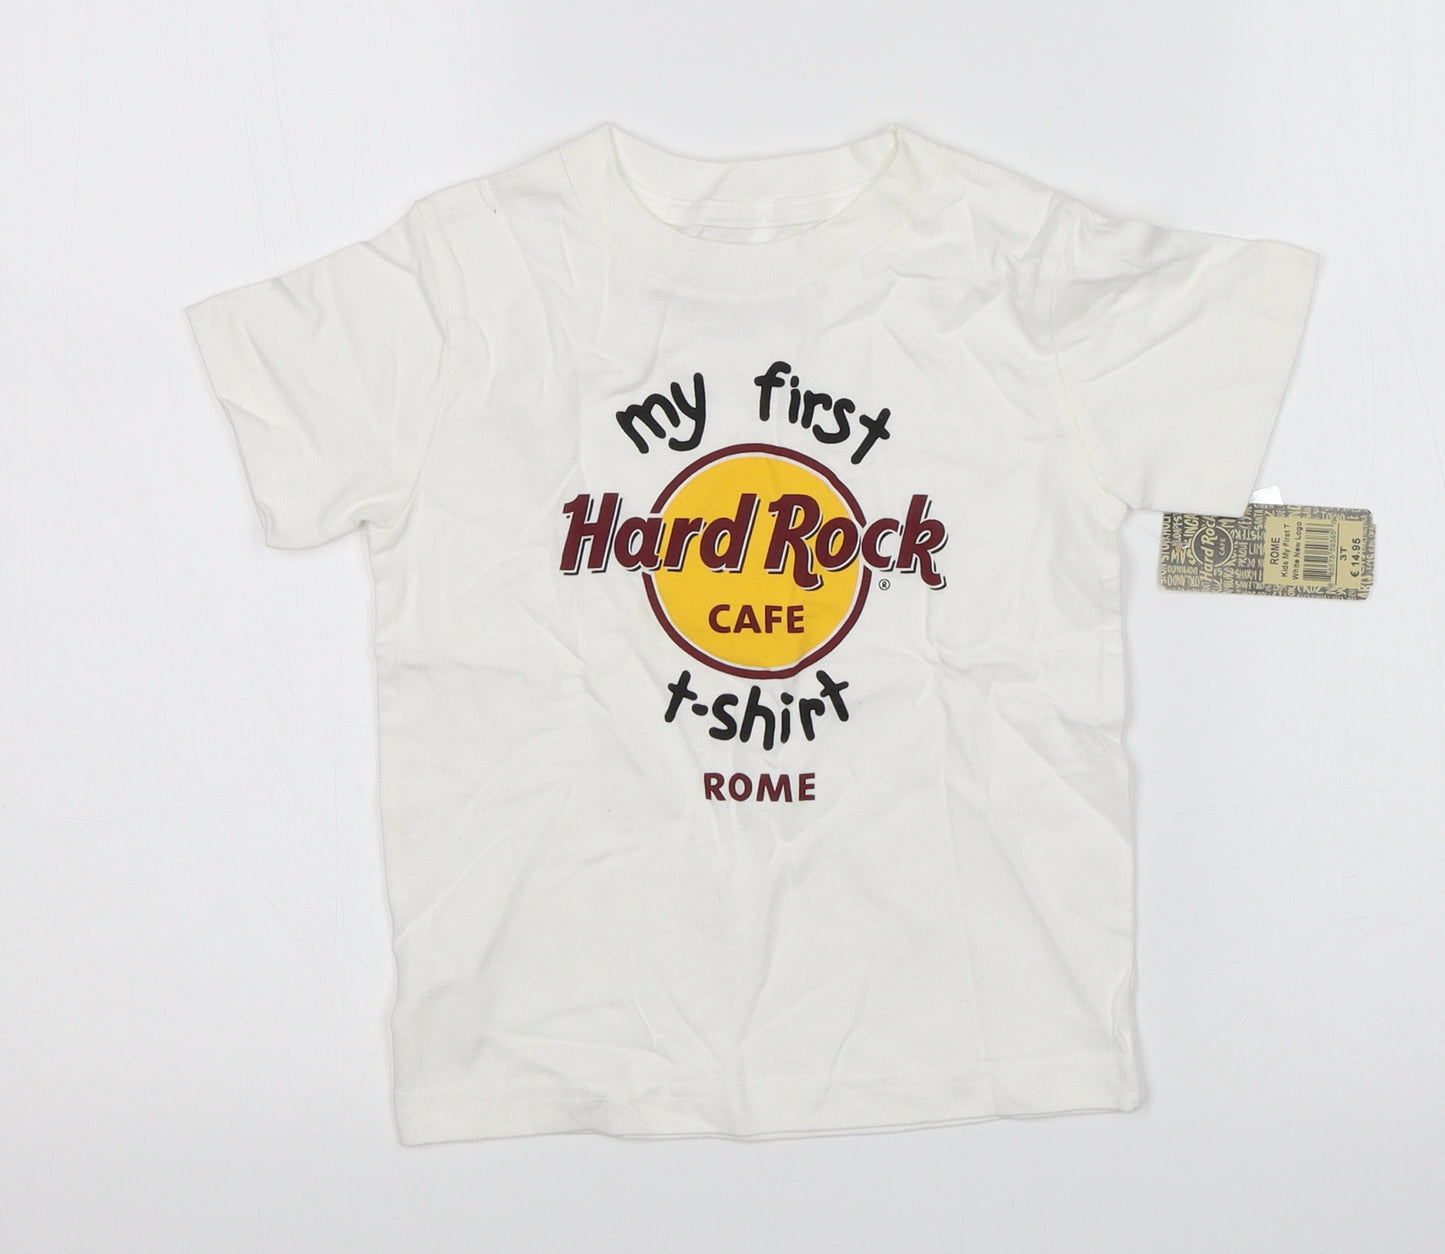 Hard Rock Cafe Boys White   Basic T-Shirt Size 3 Years  - Hard Rock Cafe Rome